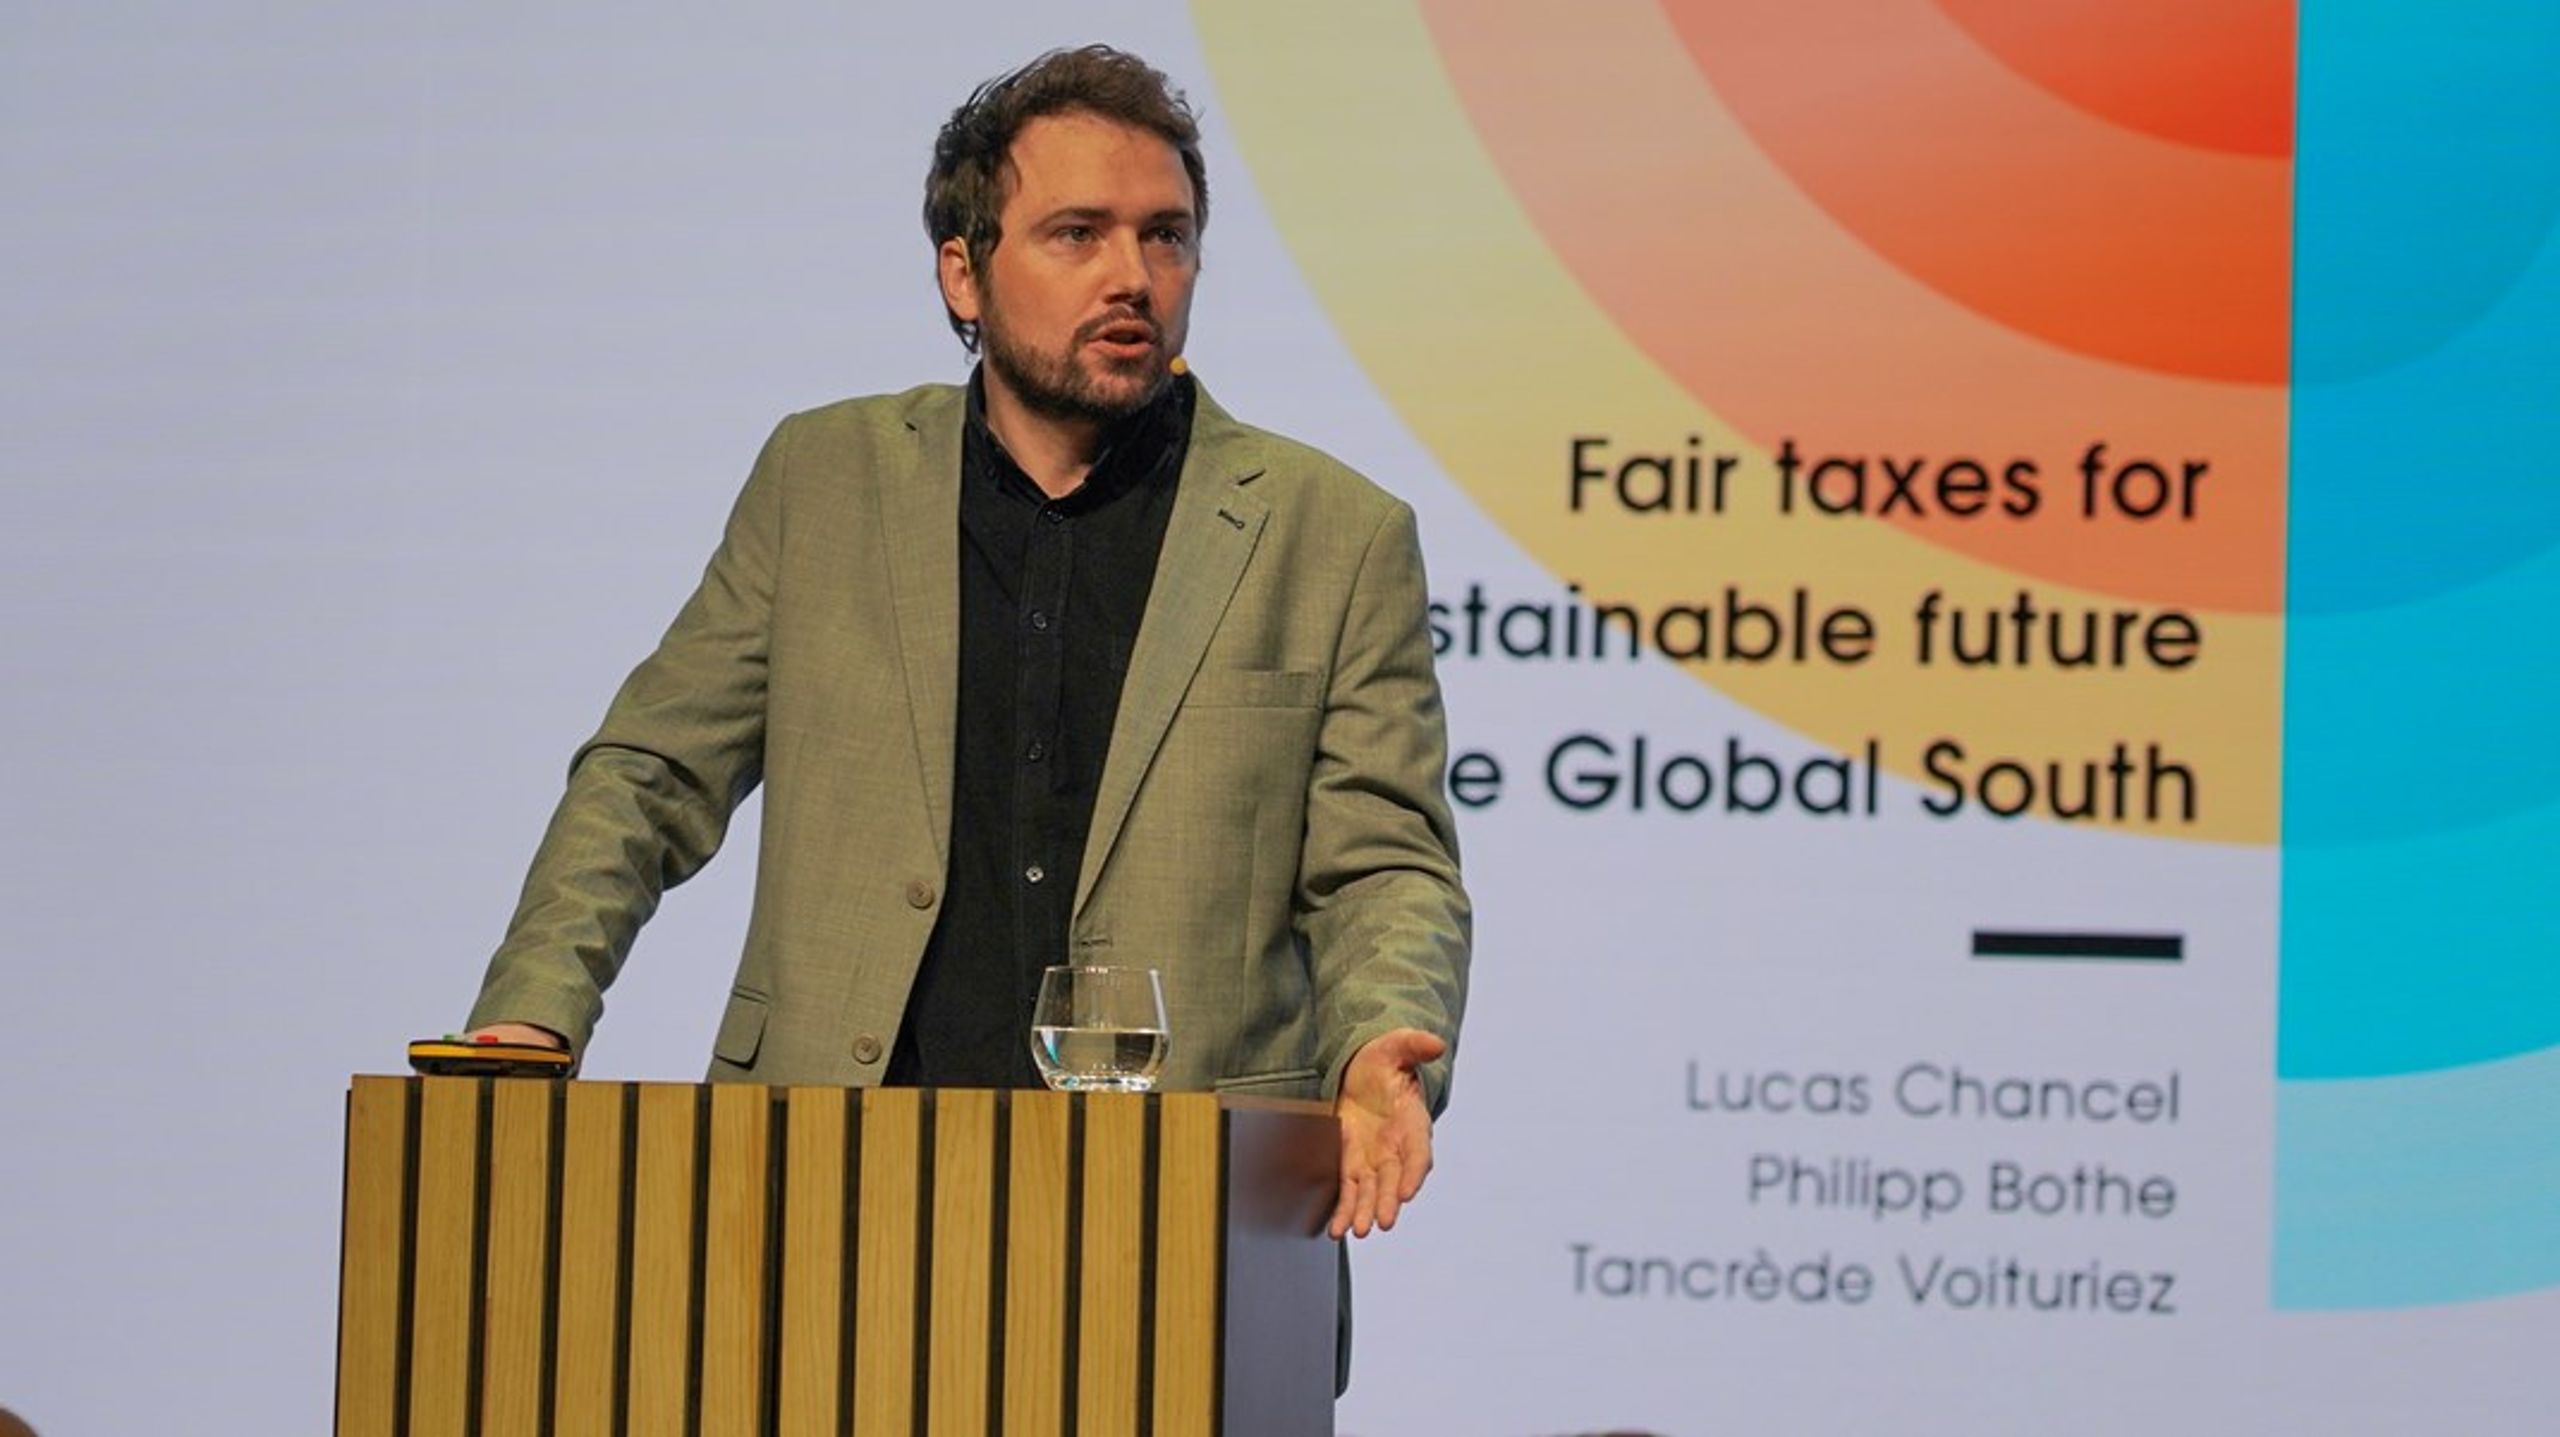 Lucas Chancel er professor i økonomi, spesialisert på ulikhet, og en av fem direktører ved World Inequality Lab, som den verdensberømte økonomen Thomas Piketty også er med å lede.